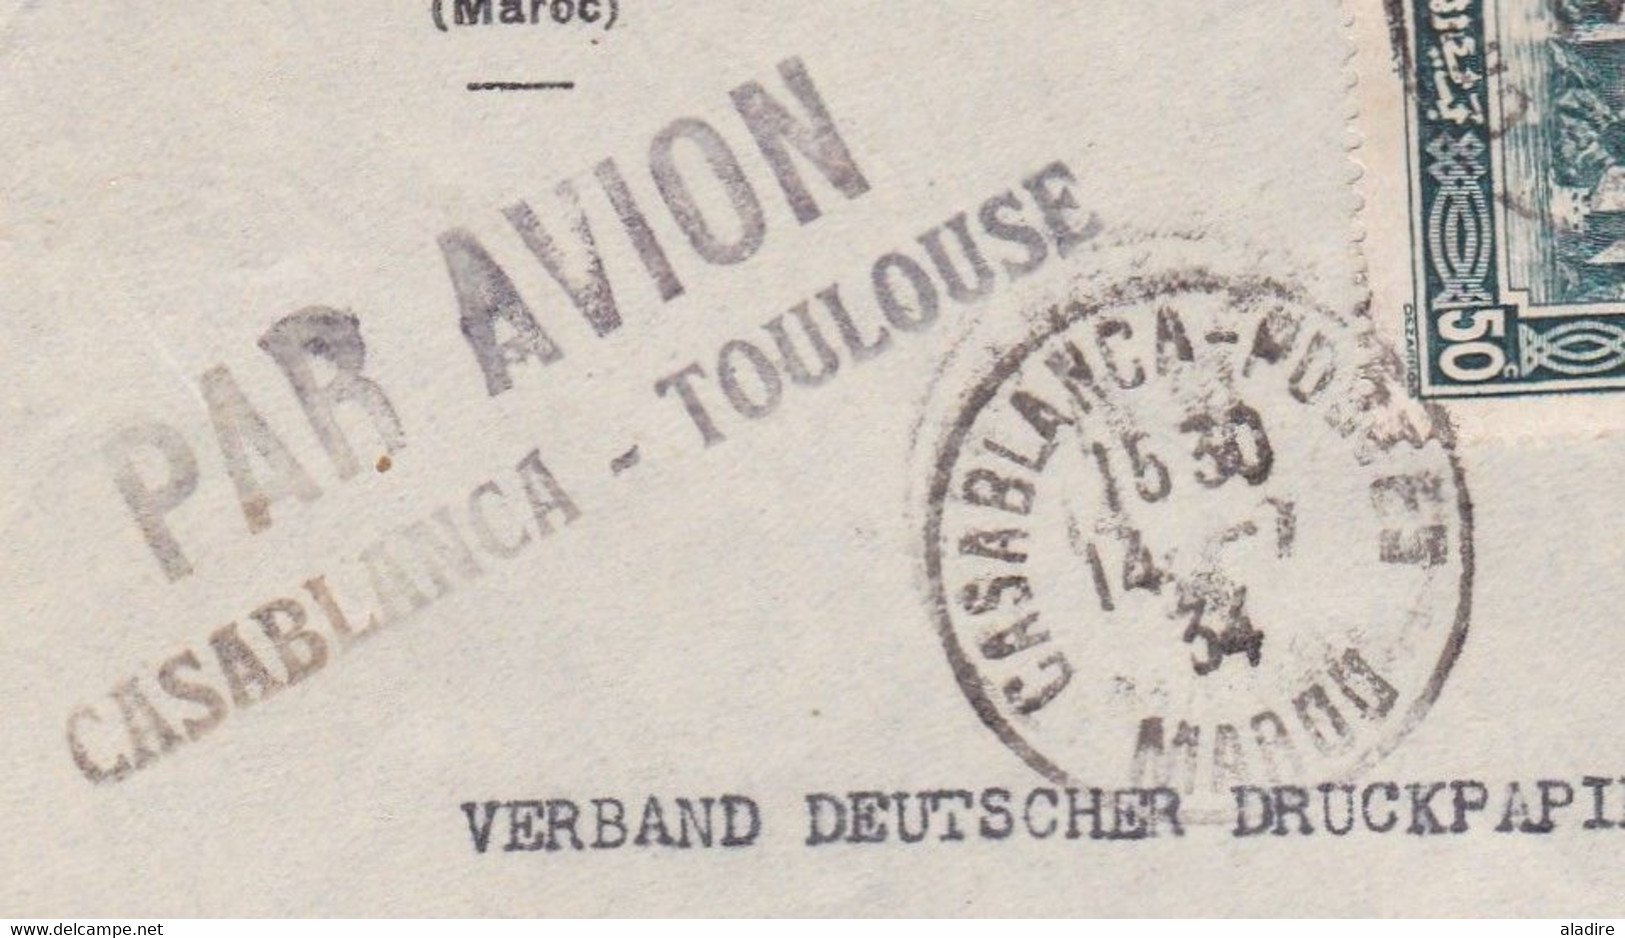 1934 - Enveloppe PAR AVION De Casablanca à Toulouse - Vers BERLIN, Allemagne - Affranchissement 3f50 - Luchtpost